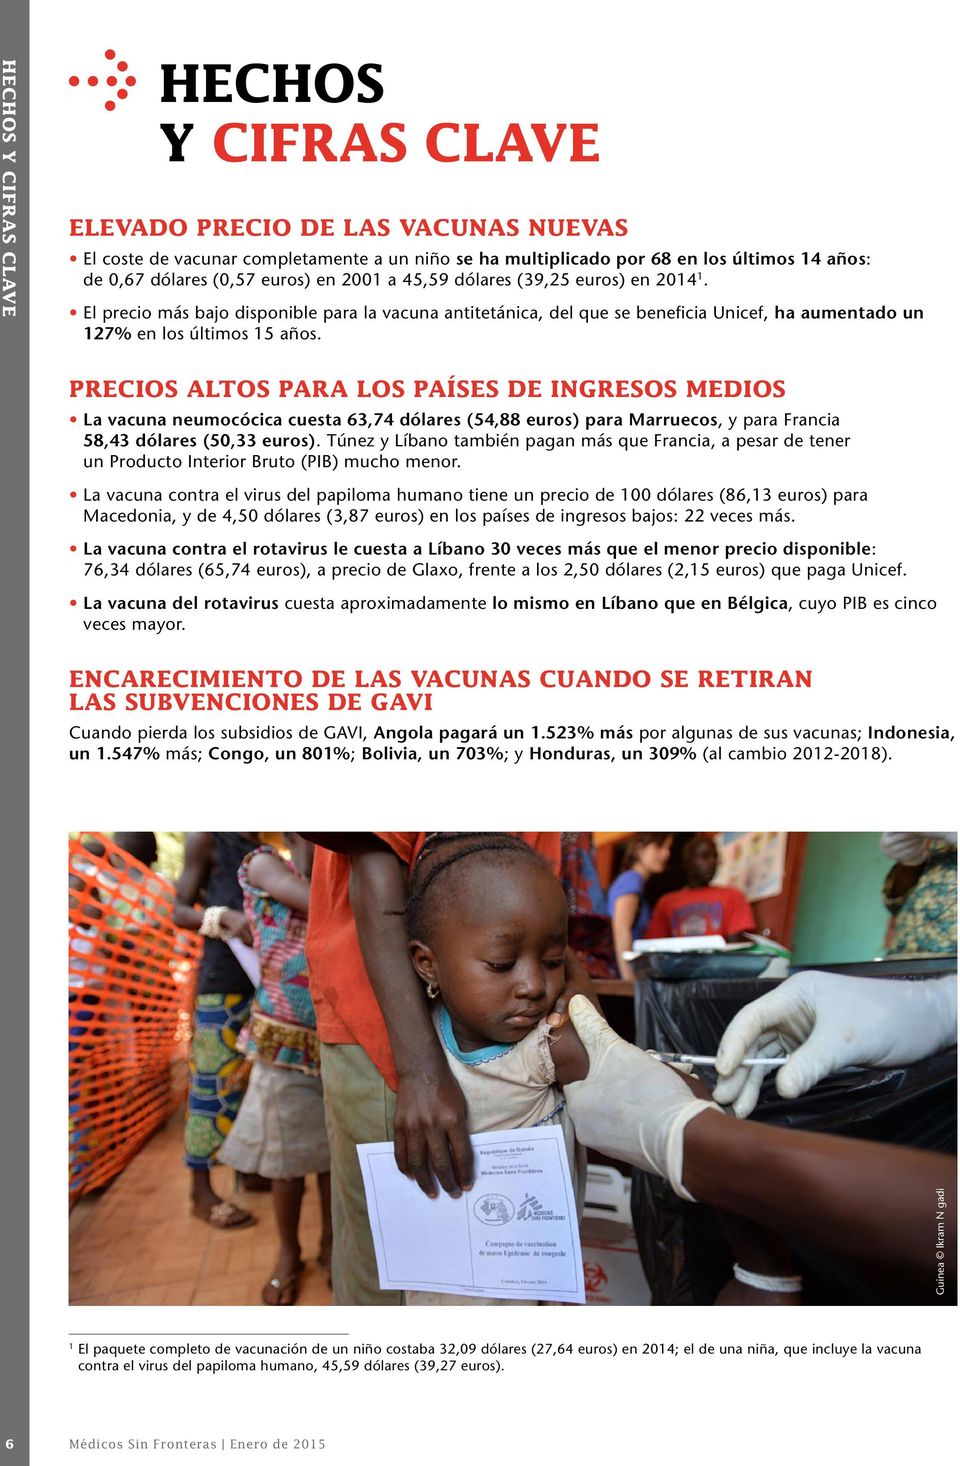 PRECIOS ALTOS PARA LOS PAÍSES DE INGRESOS MEDIOS La vacuna neumocócica cuesta 63,74 dólares (54,88 euros) para Marruecos, y para Francia 58,43 dólares (50,33 euros).